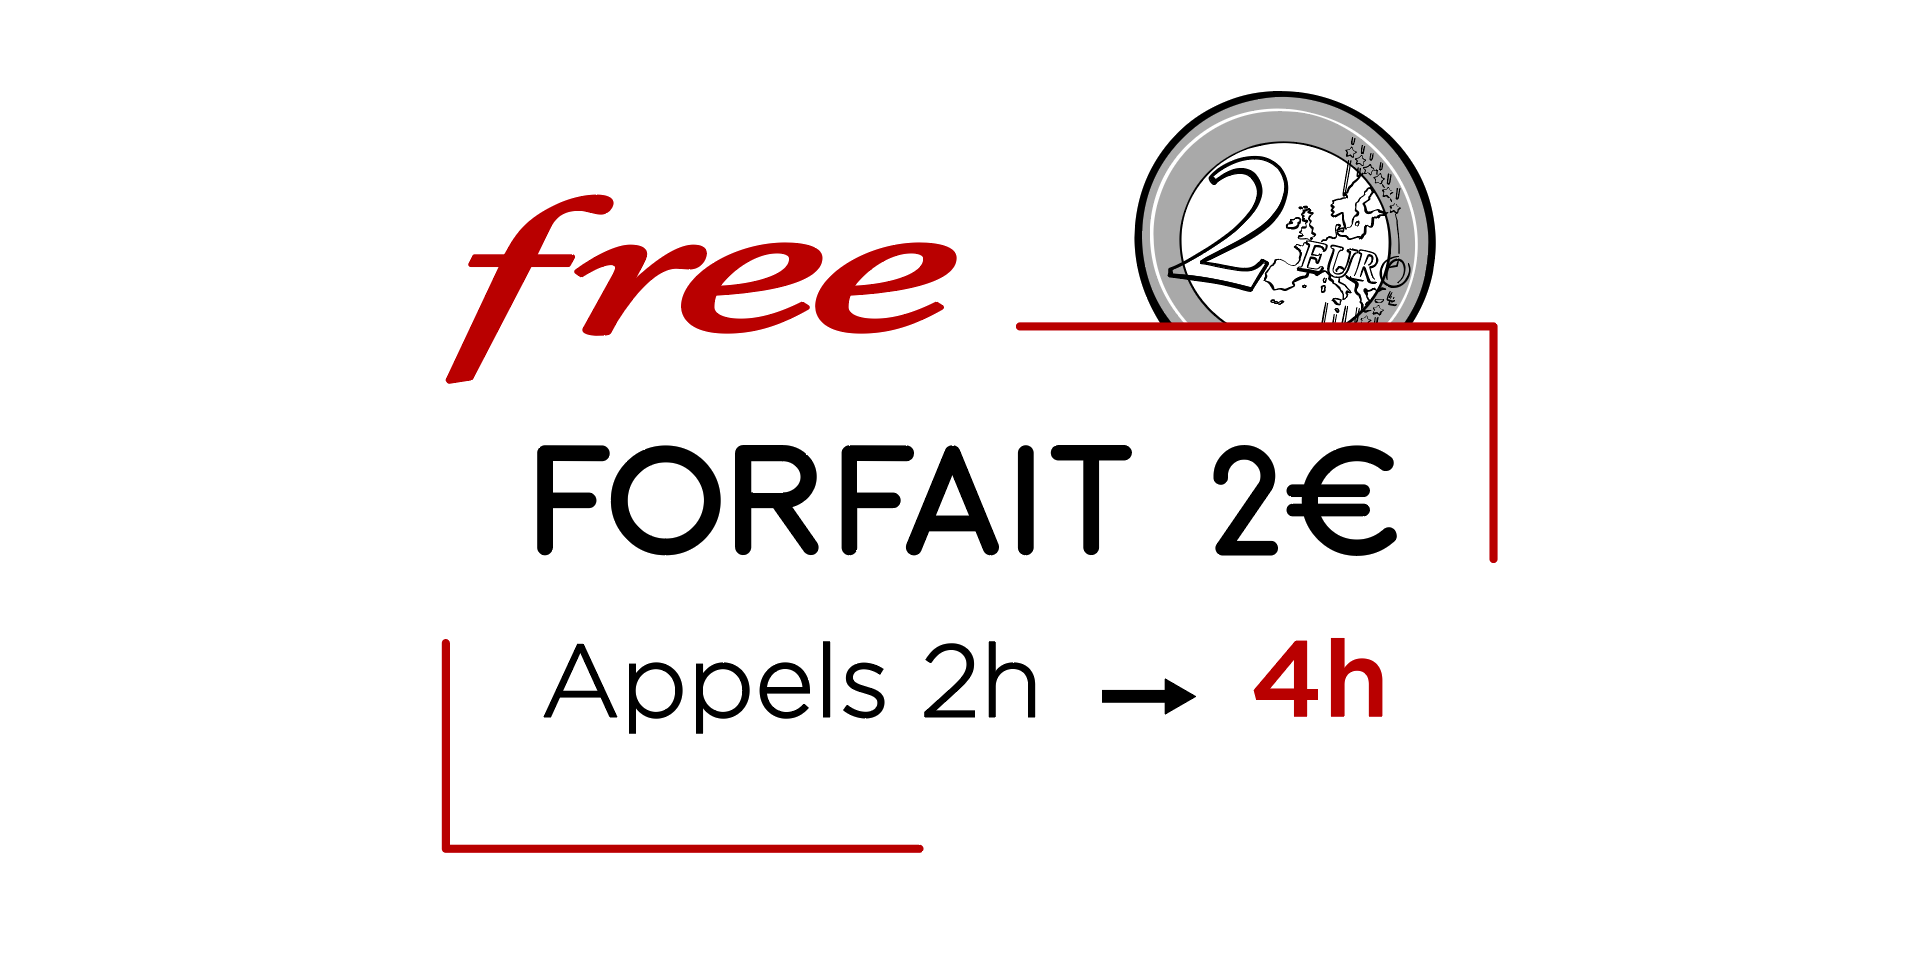 Forfait mobile 2€/0€: Free offre 2 fois plus d’heures d’appel à ses abonnés 